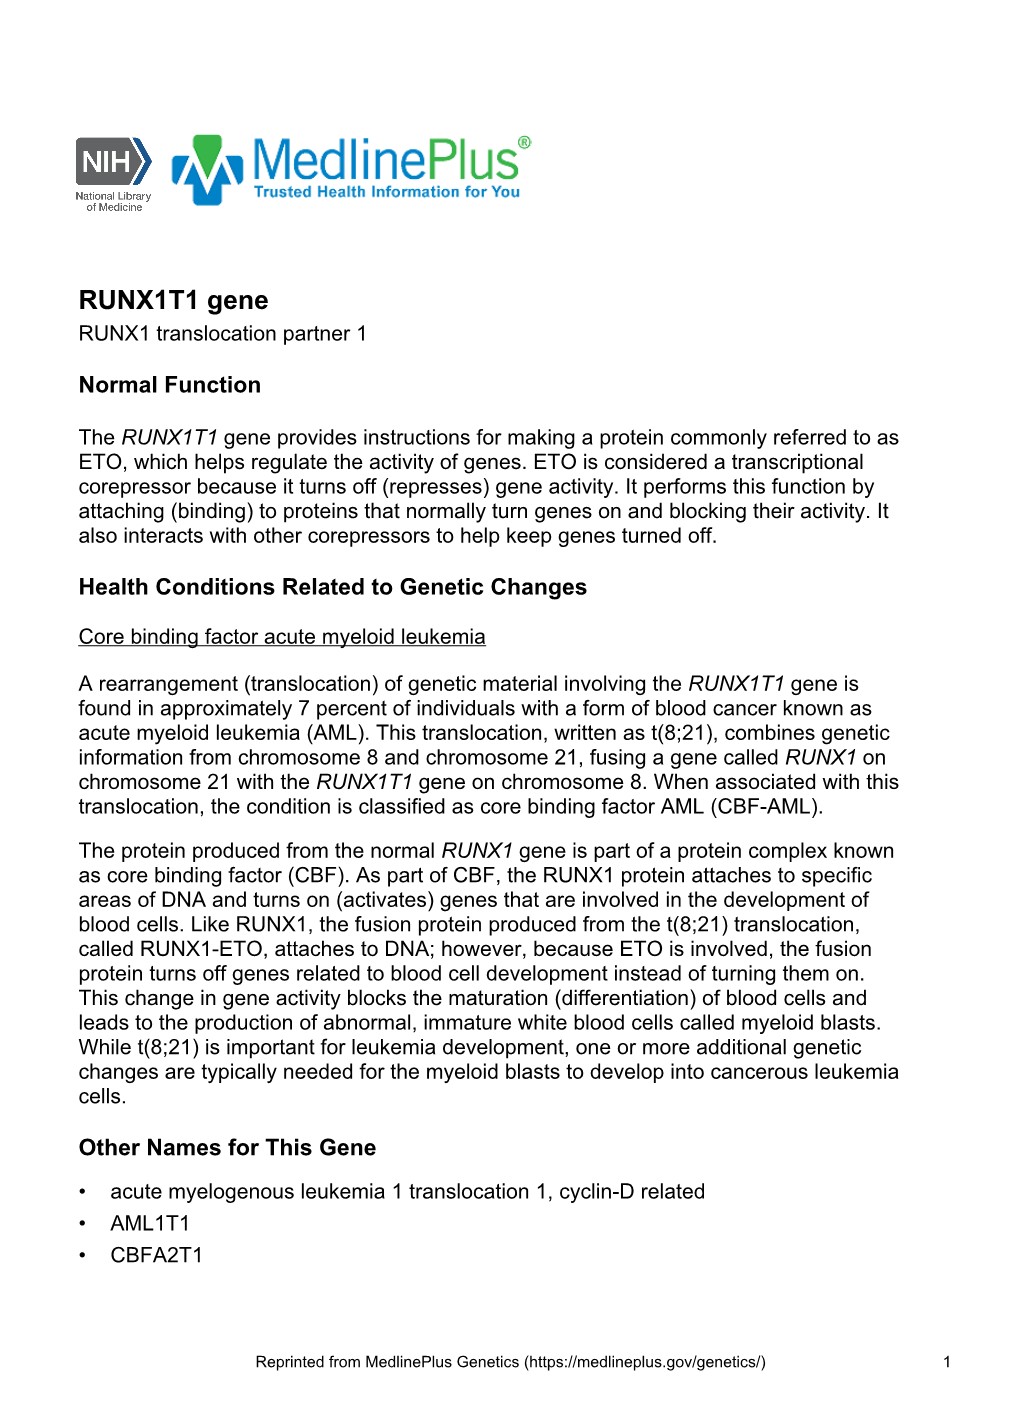 RUNX1T1 Gene RUNX1 Translocation Partner 1